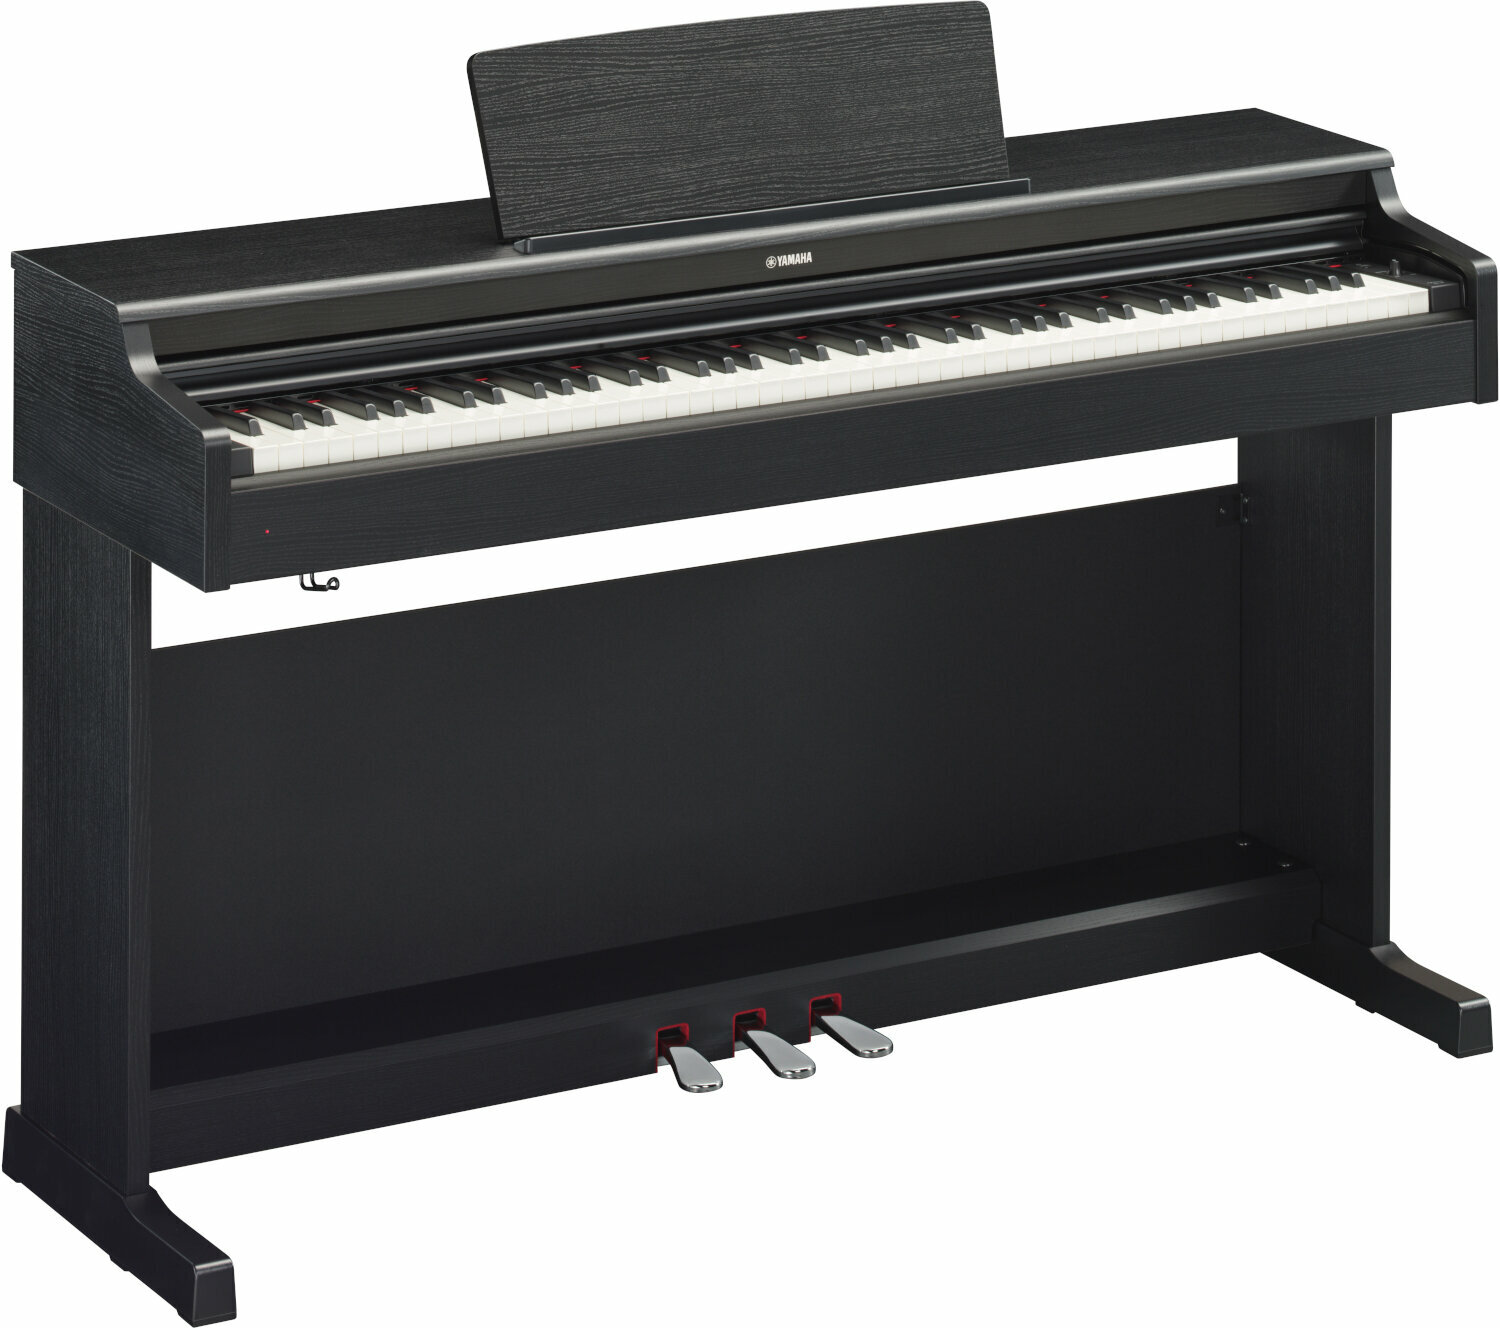 Ψηφιακό Πιάνο Yamaha YDP 164 Μαύρο Ψηφιακό Πιάνο